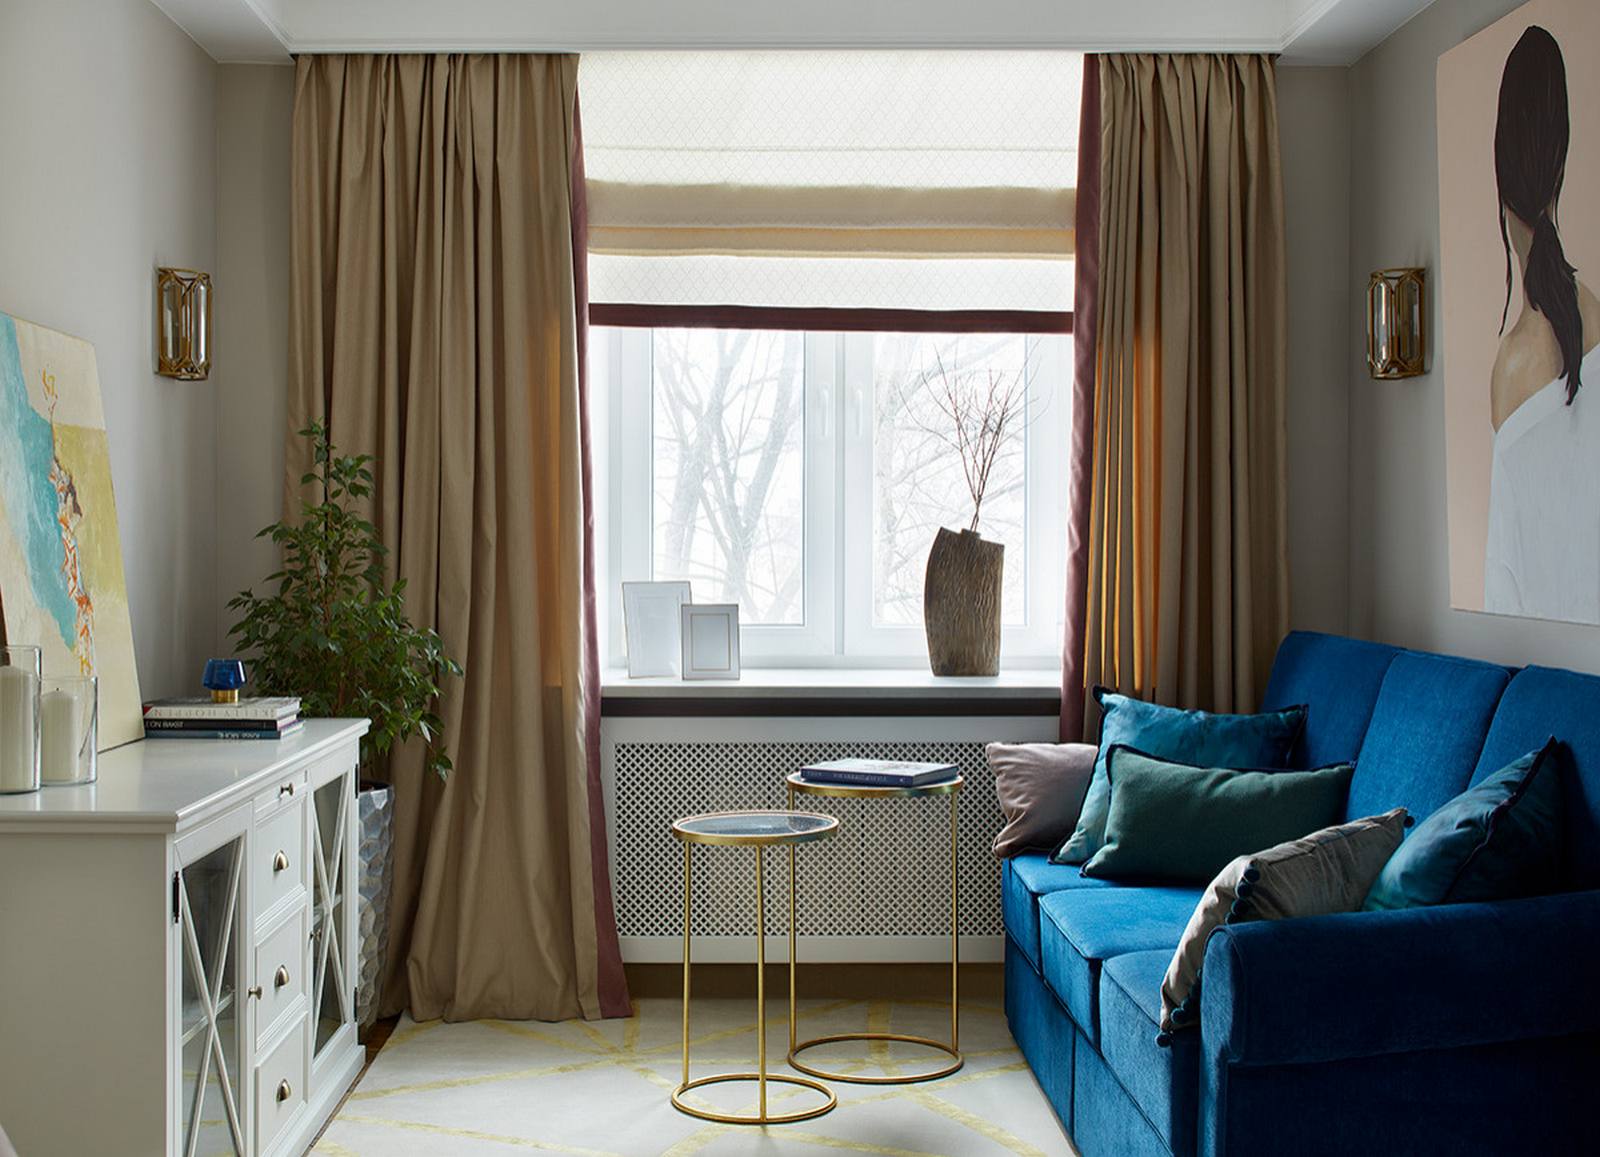 Phòng khách được bố trí bên cạnh ô cửa sổ lớn nhìn ra những hàng cây bên ngoài thật lãng mạn. Chiếc ghế sofa màu xanh làm đậm cùng 2 chiếc bàn nước cao thấp bằng kim loại mạ vàng đồng đơn giản nhưng tinh tế.